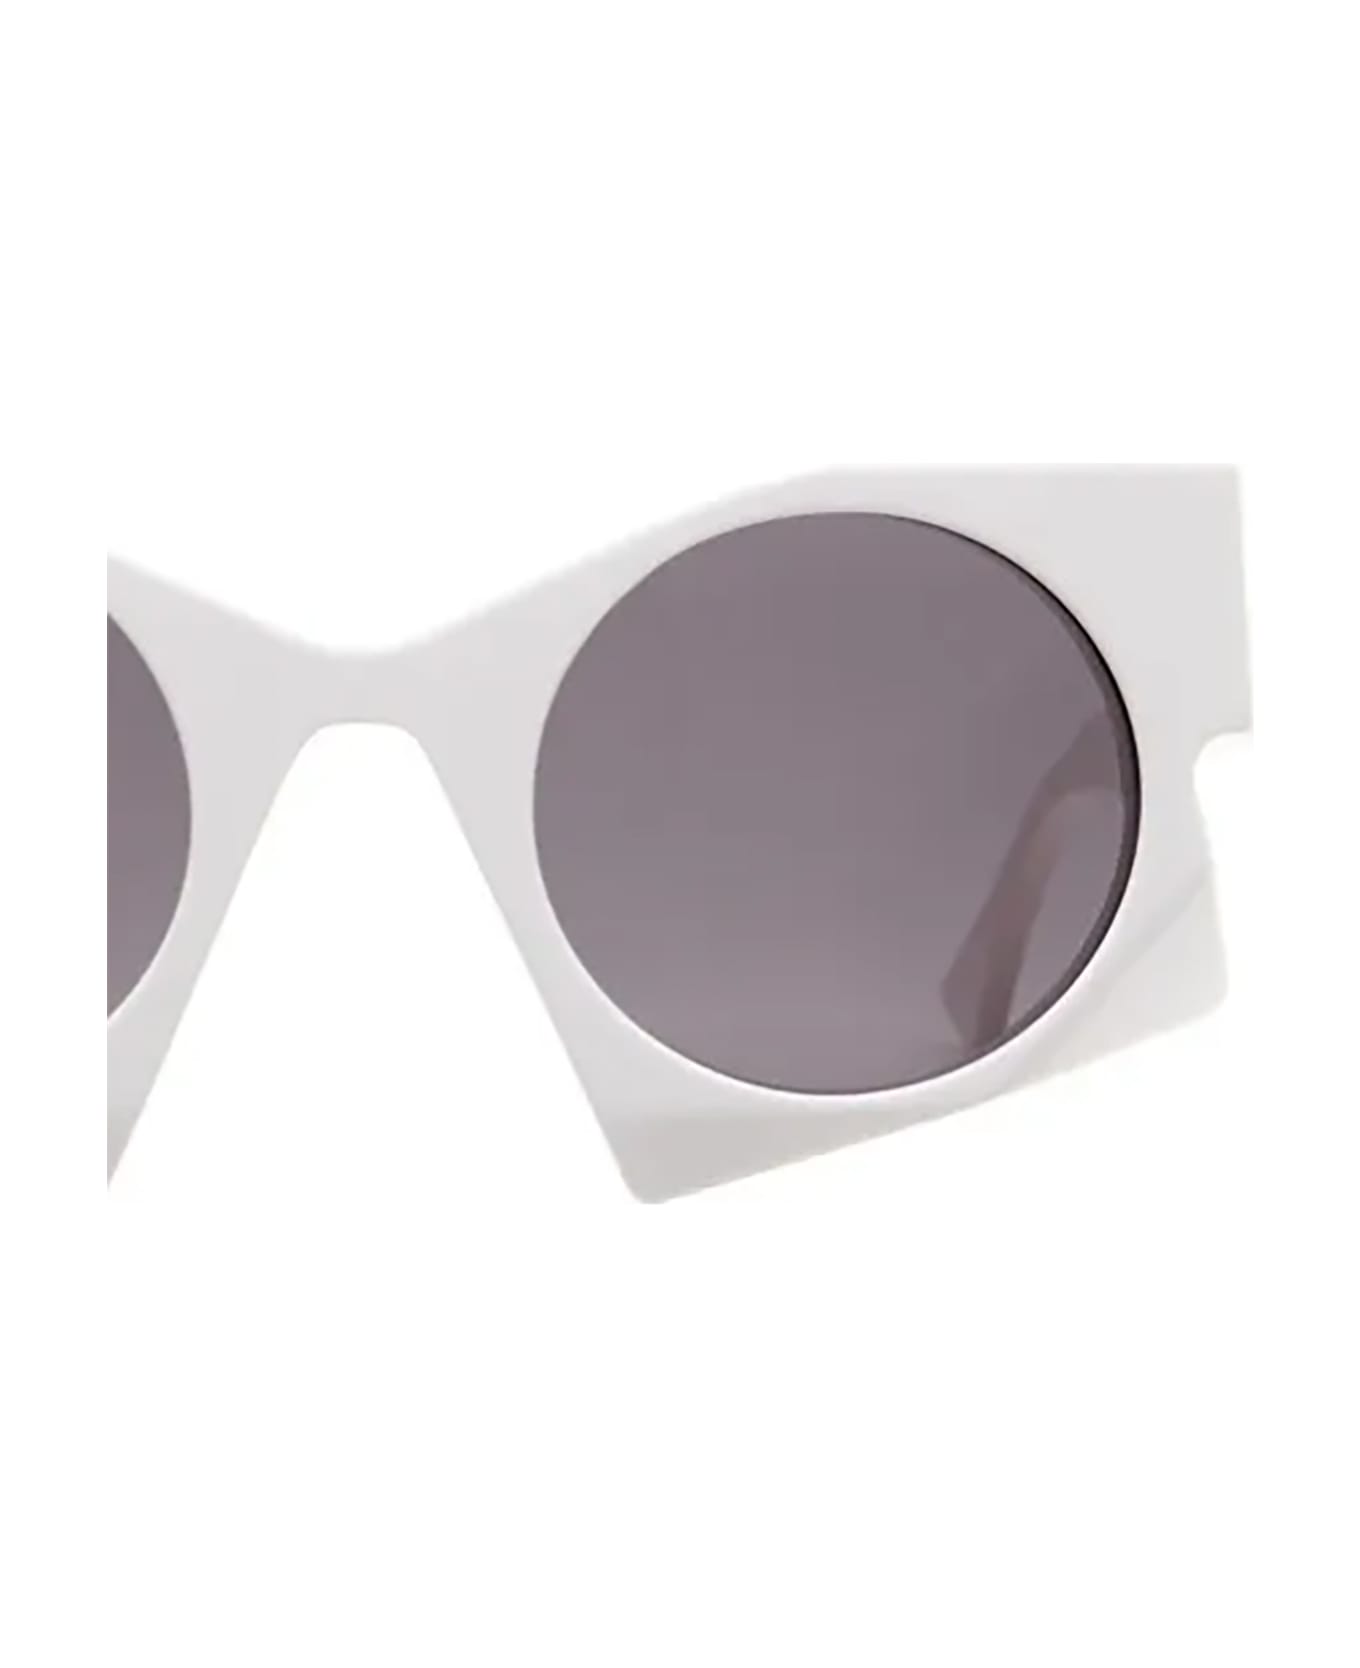 Kuboraum U5 Sunglasses - Grey